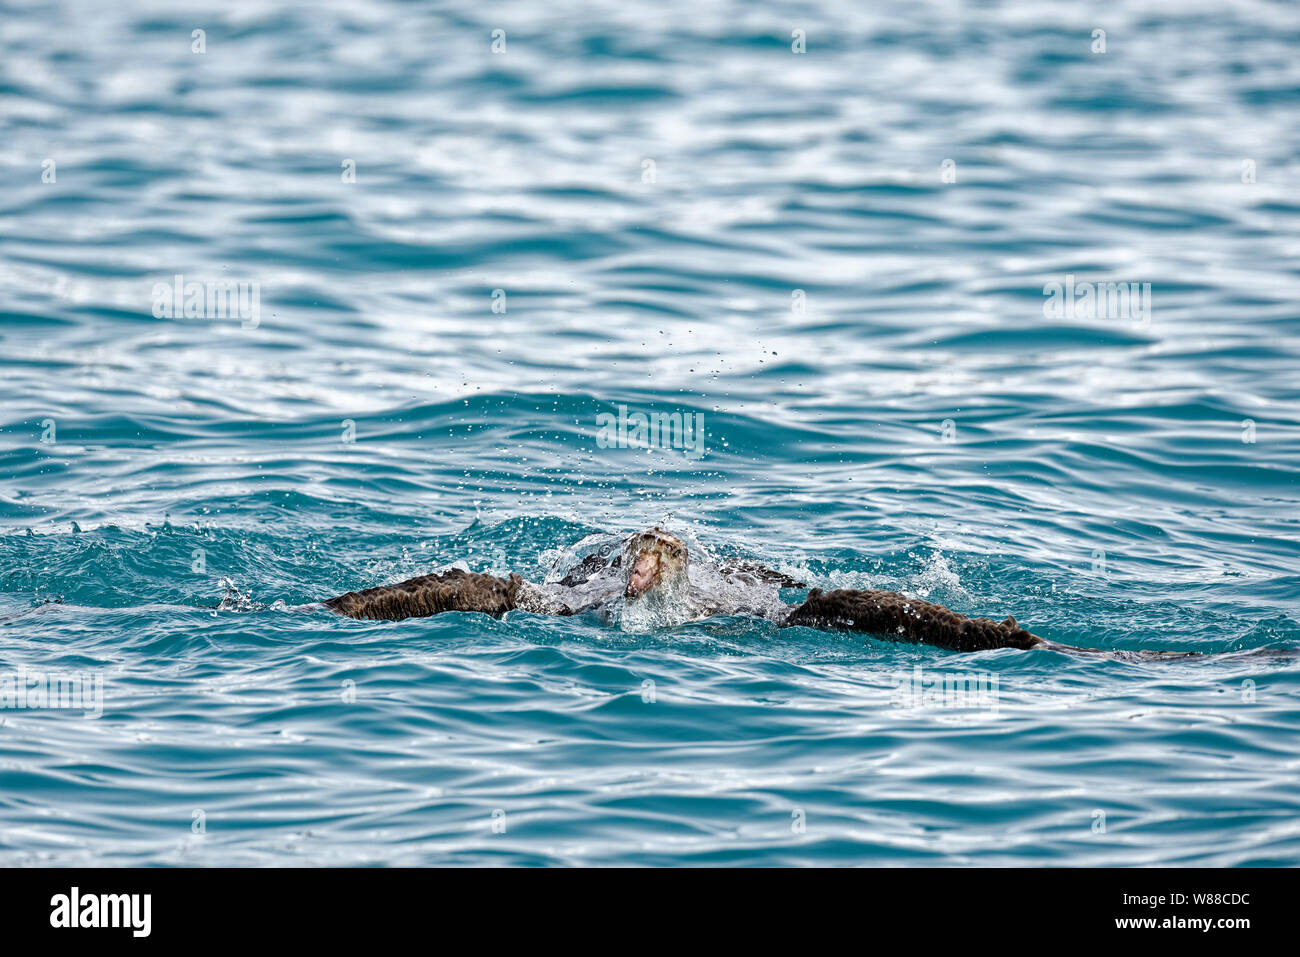 Petrel Gigante del Sur (Macronectes giganteus) toma un baño en el Atlántico sur frente a las costas de Georgia del Sur, Georgia del Sur y Sandwich del Sur Foto de stock